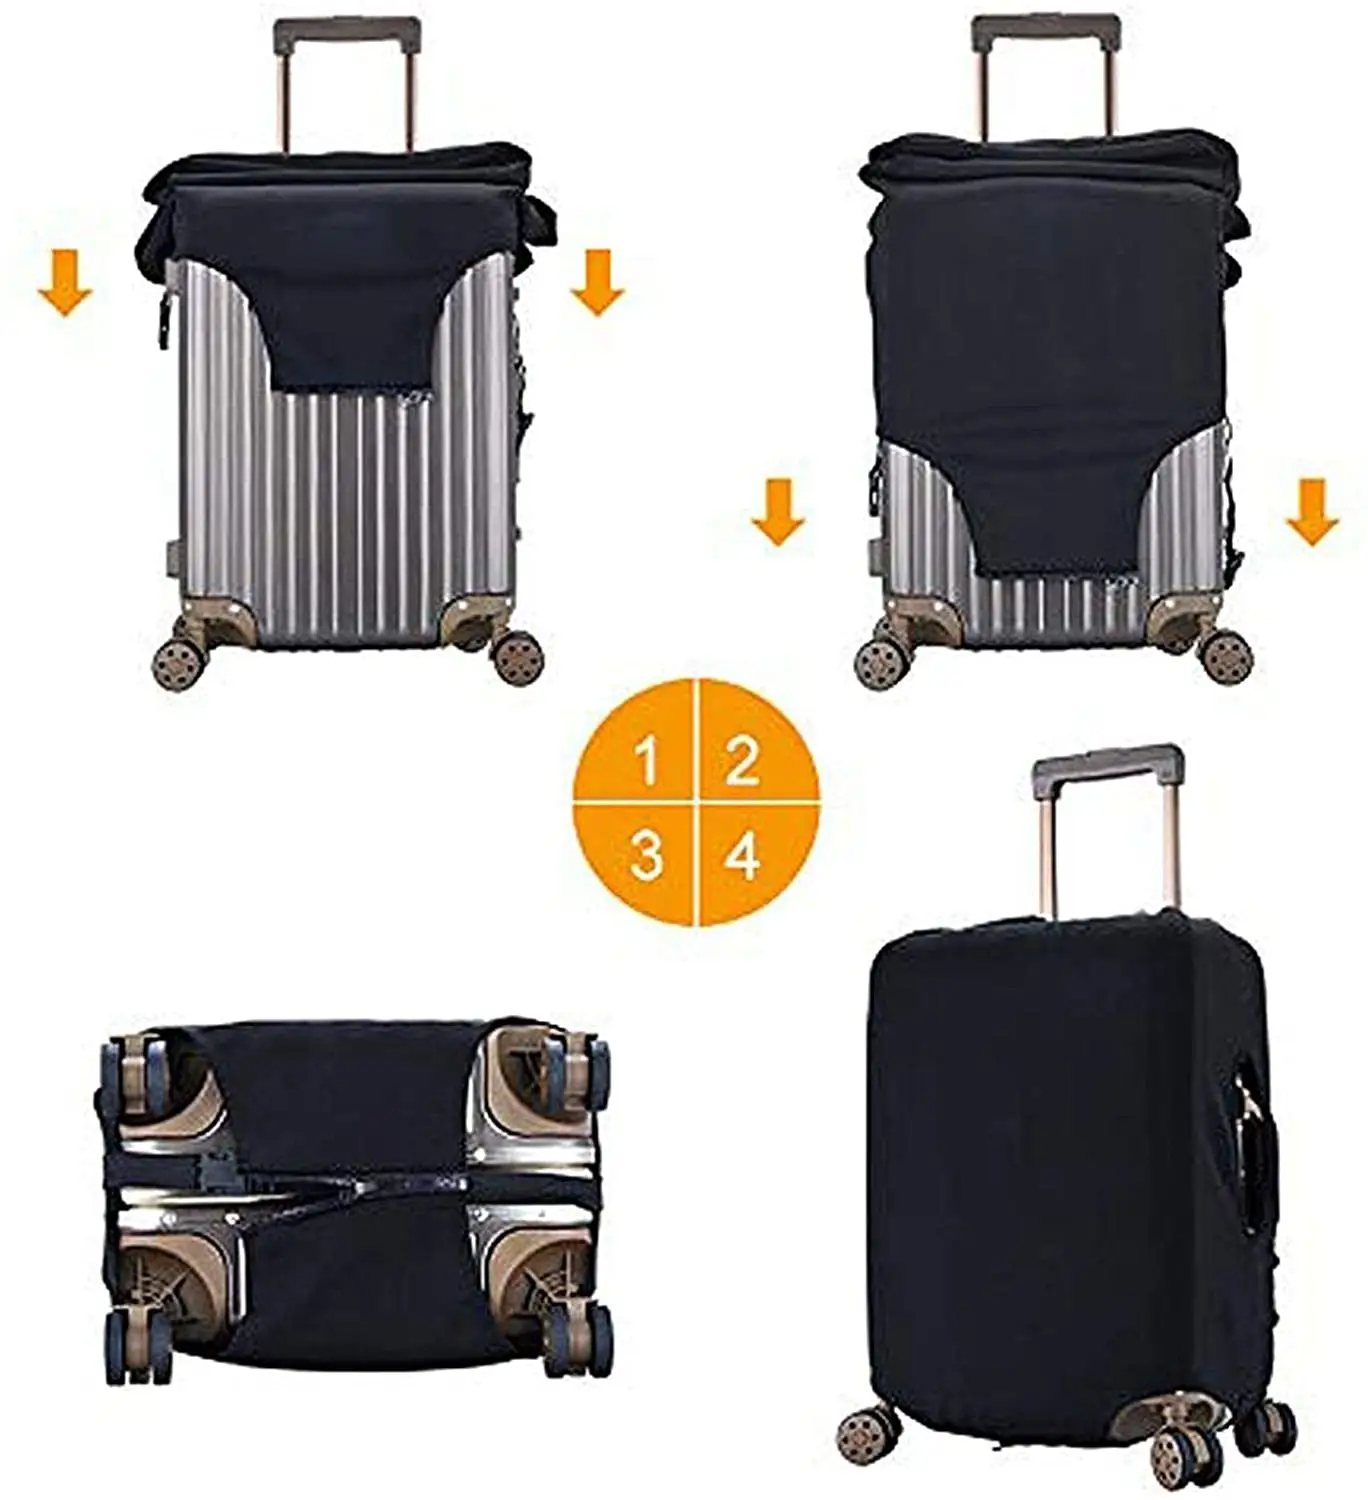 Yüksek kaliteli su geçirmez seyahat bavul koruyucu valiz kapak koruyucu bagaj kapağı toz geçirmez uyar